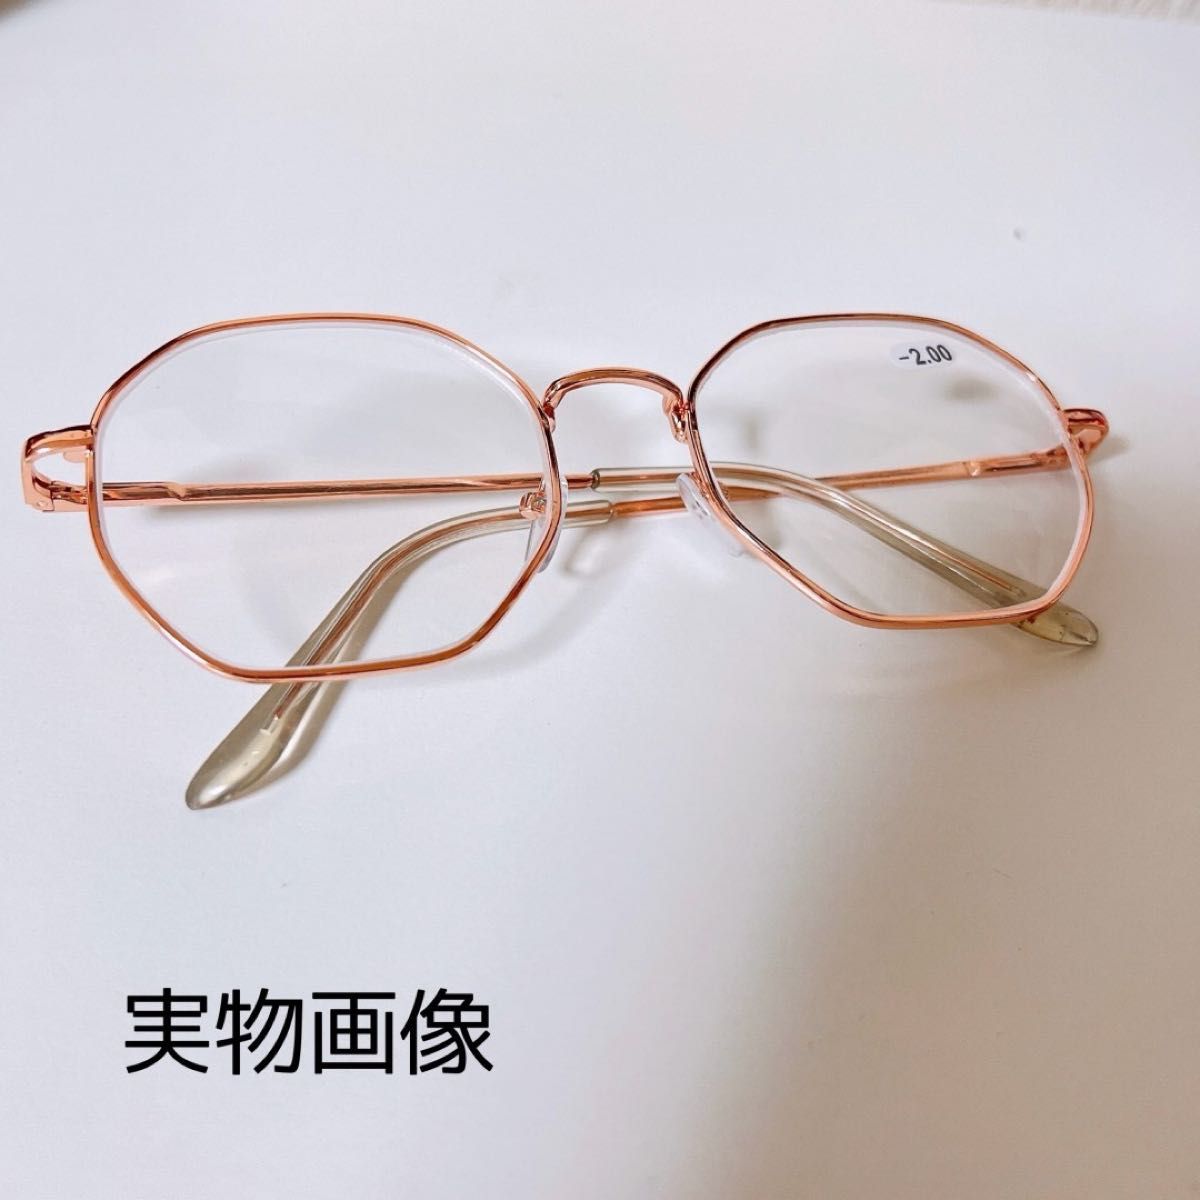 近視メガネ －3.0 ピンクゴールド度入りメガネ おしゃれ 大きめフレーム韓国